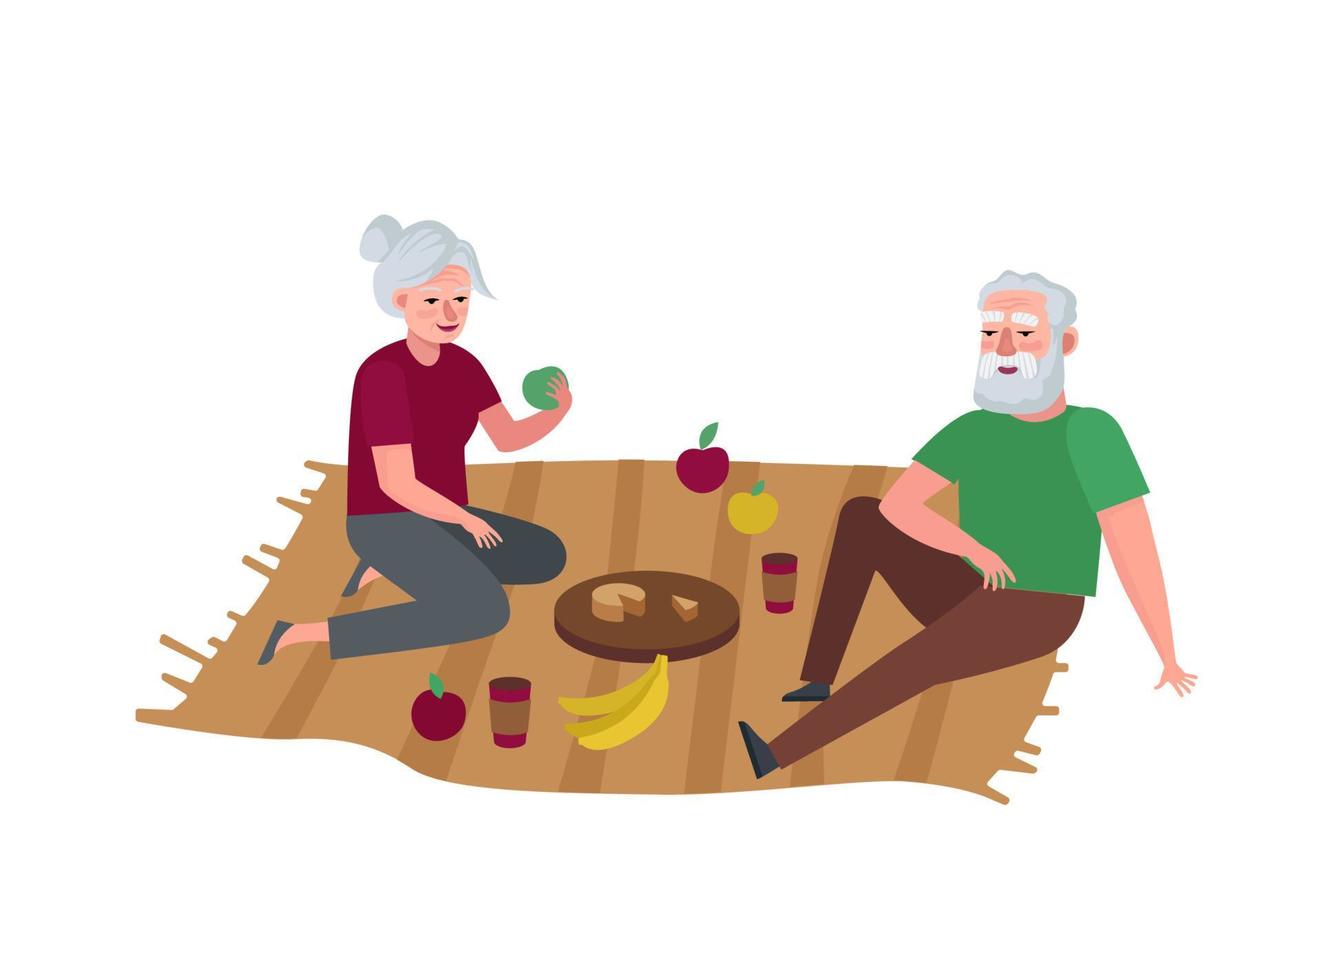 coppia di anziani rilassante sul picnic. i nonni all'aperto trascorrono del tempo insieme. vacanze per il tempo libero delle persone anziane. nonna e nonno in una relazione di vecchiaia. illustrazione eps di vettore dei pensionati